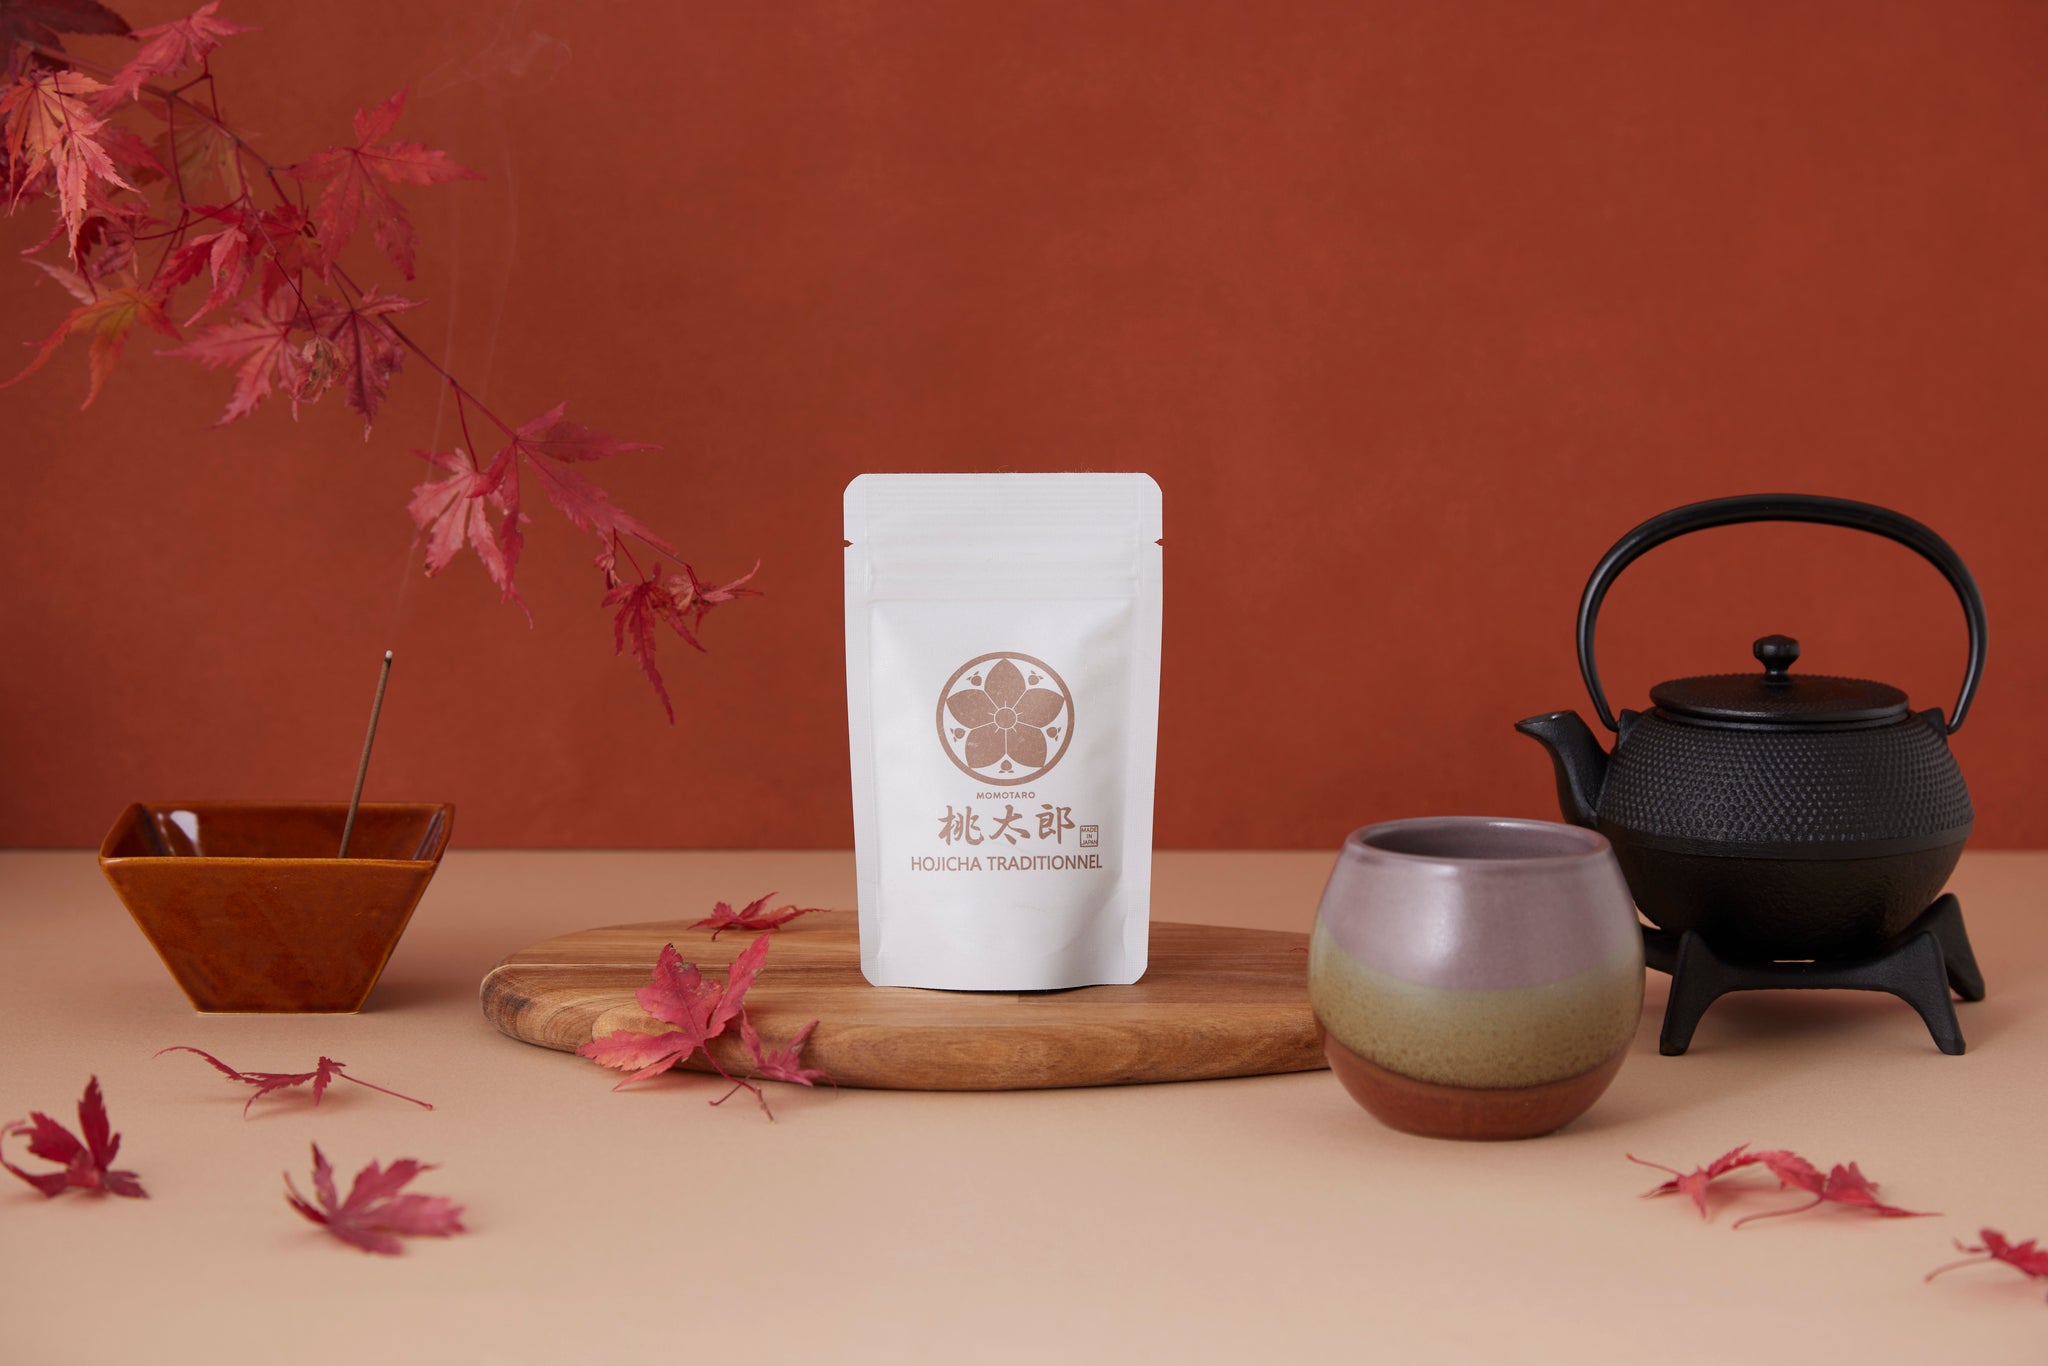 Mise en scène thé hojicha japonais bio